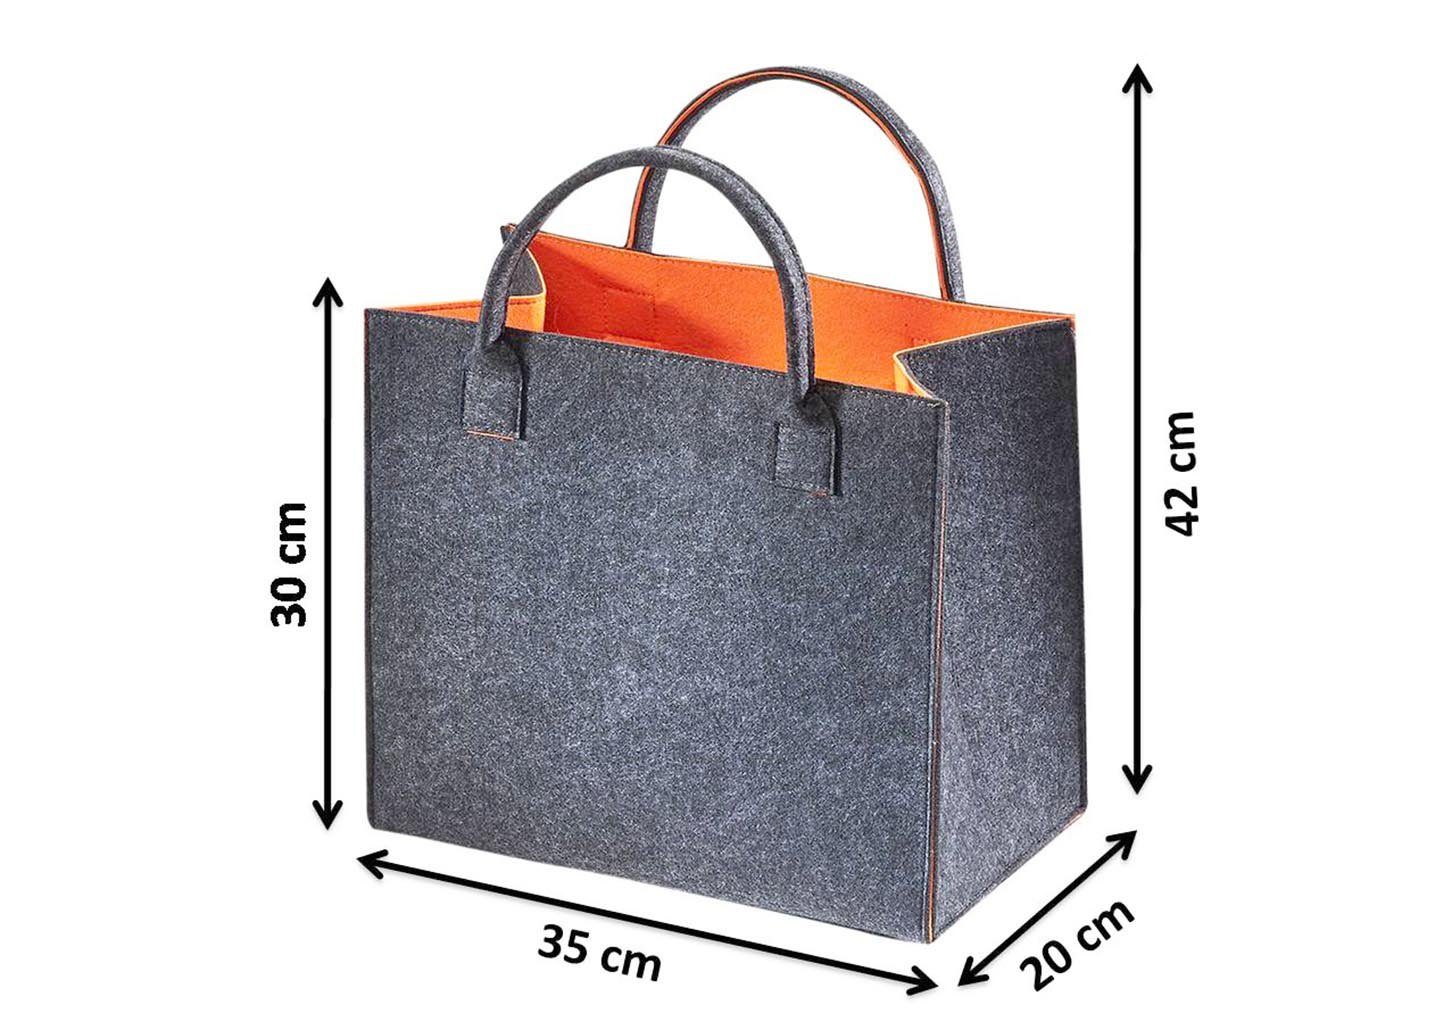 Kobolo Einkaufsshopper Filztasche innen orange, außen grau meliert 20 l